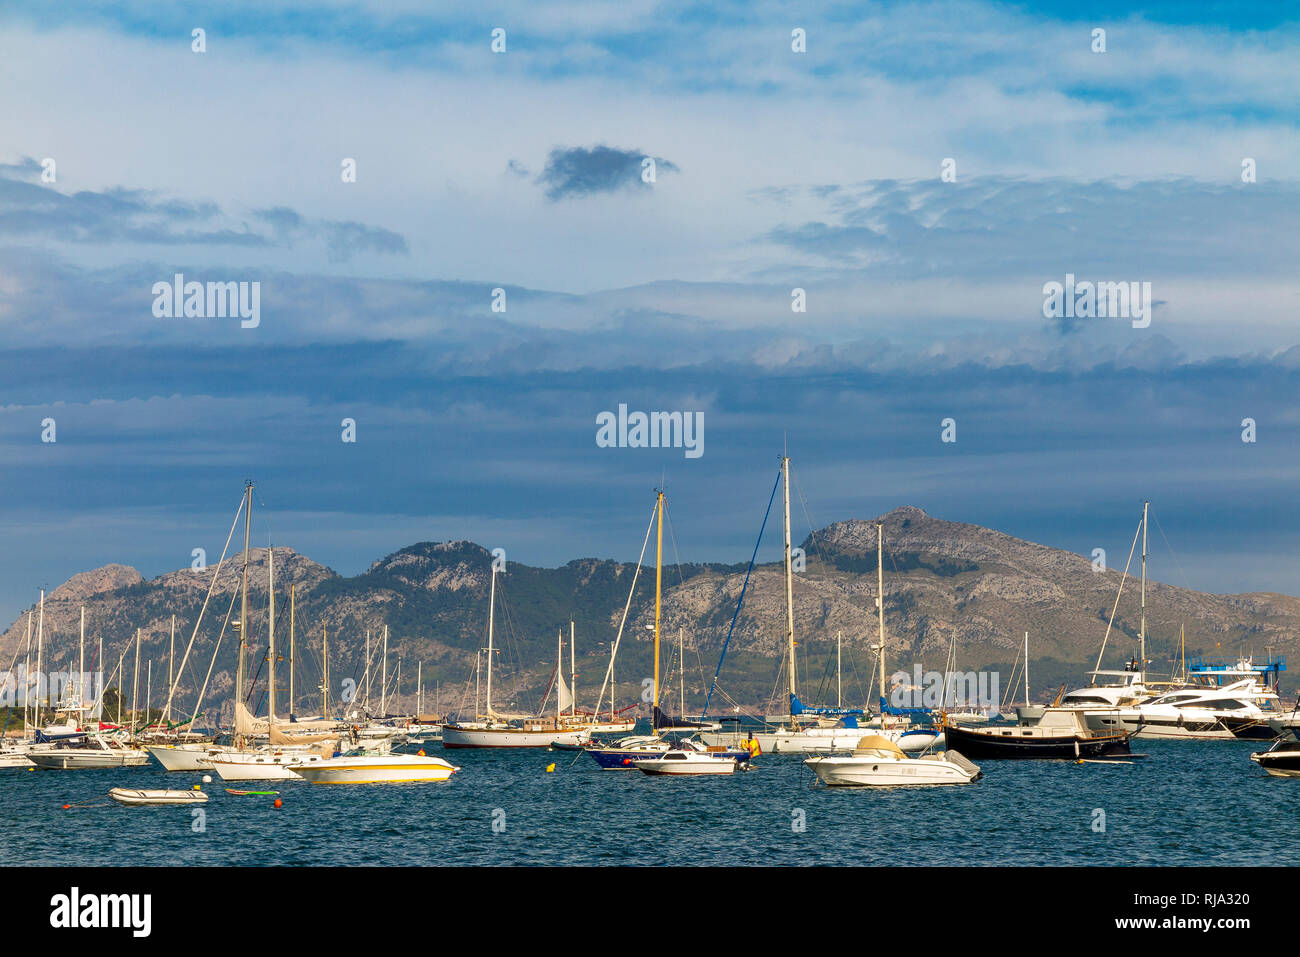 Los barcos en la bahía, el Puerto de Pollenca, al noreste de la isla de Mallorca, Mediterráneo, Islas Baleares, España, sur de Europa Foto de stock